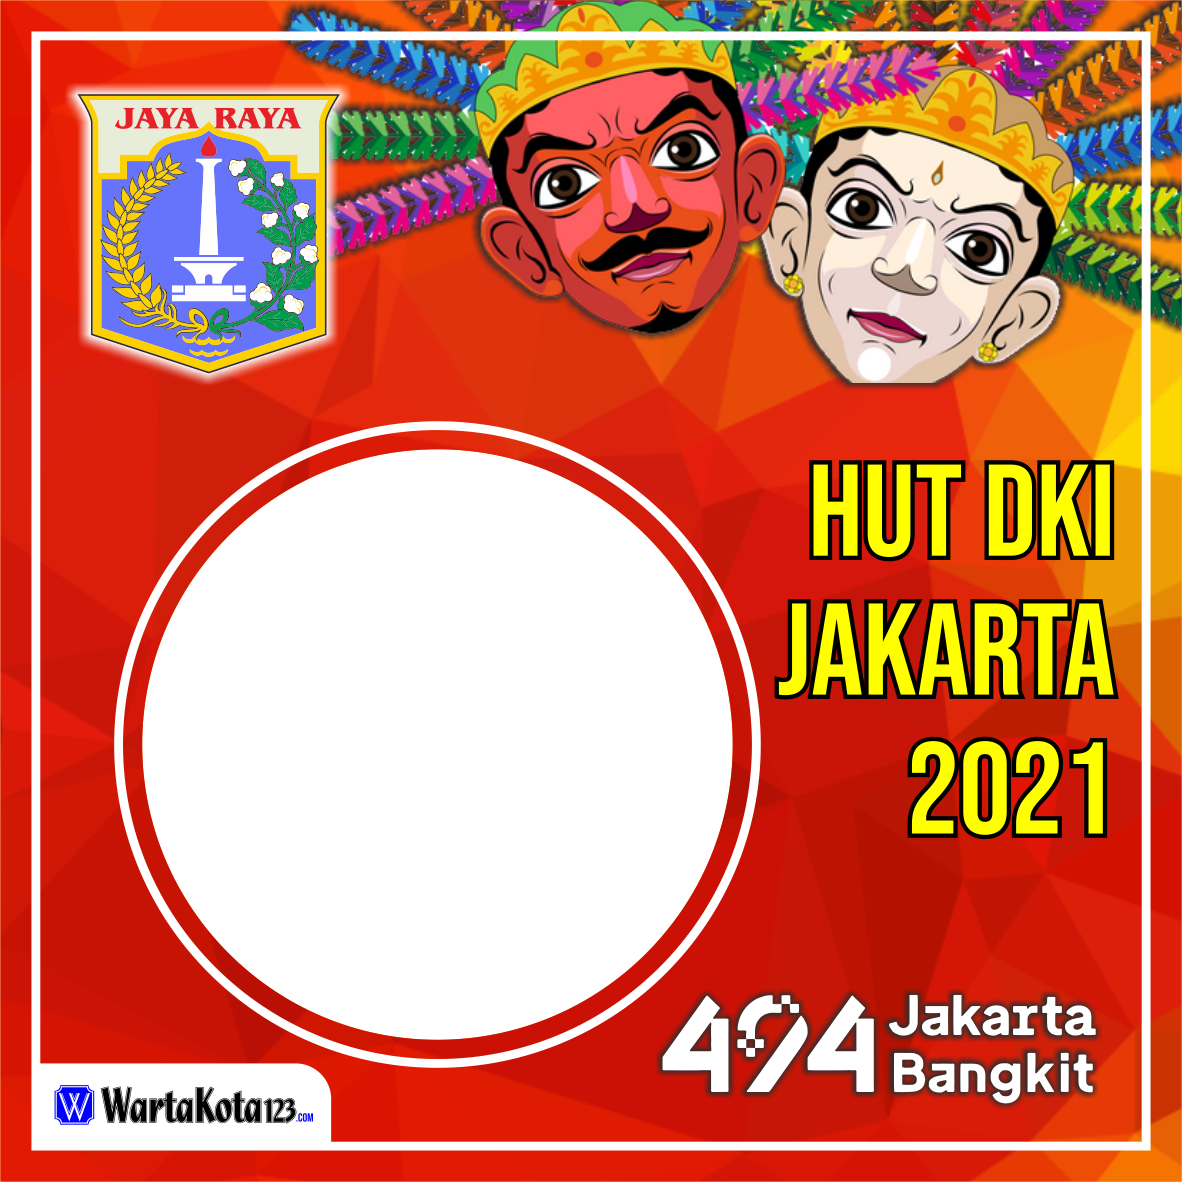 Twibbon HUT DKI Jakarta 2021